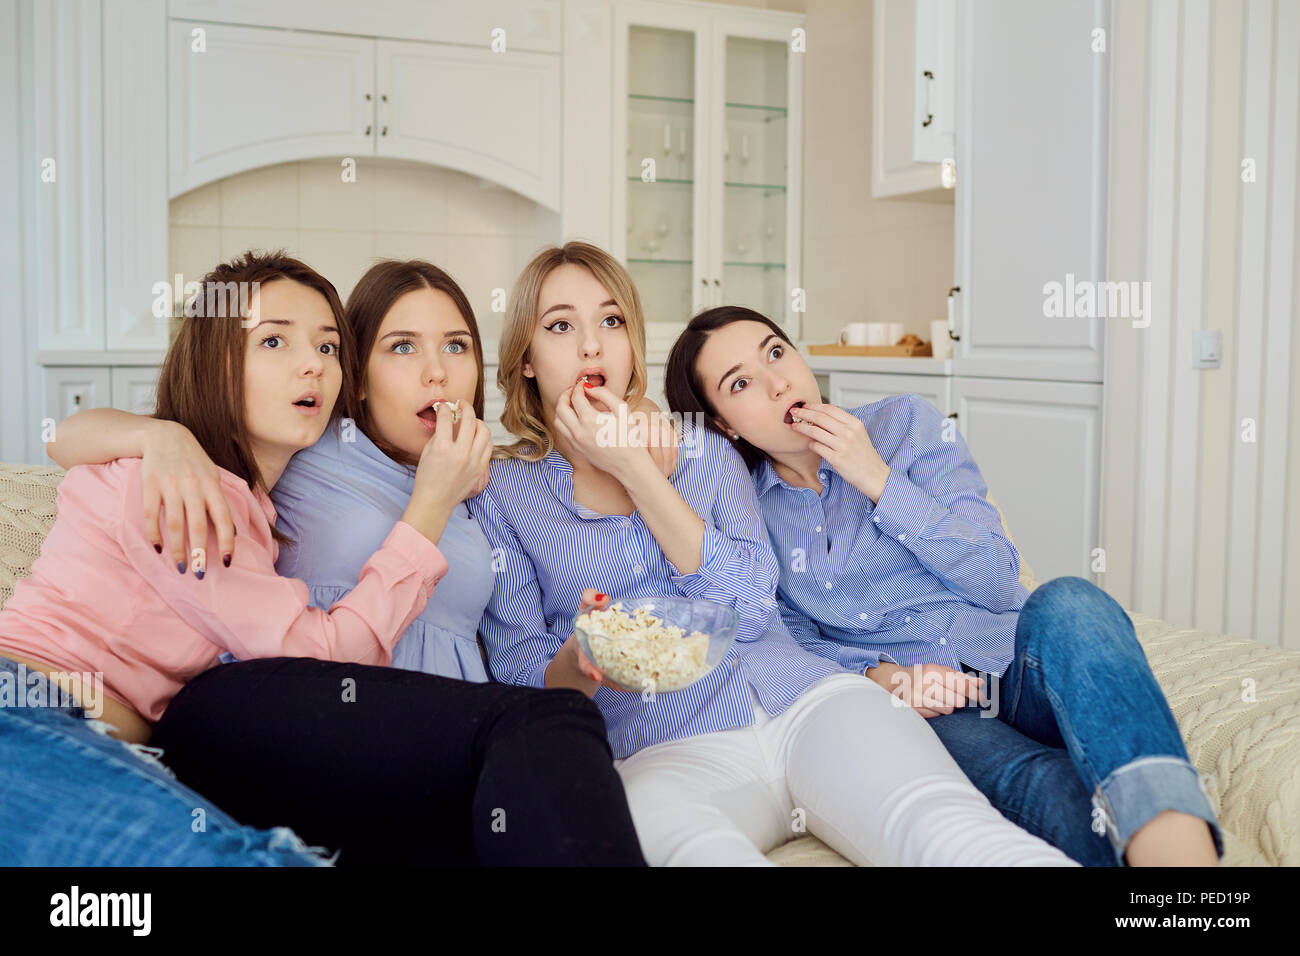 Les jeunes filles de regarder la télévision, eating popcorn assis sur le canapé. Banque D'Images